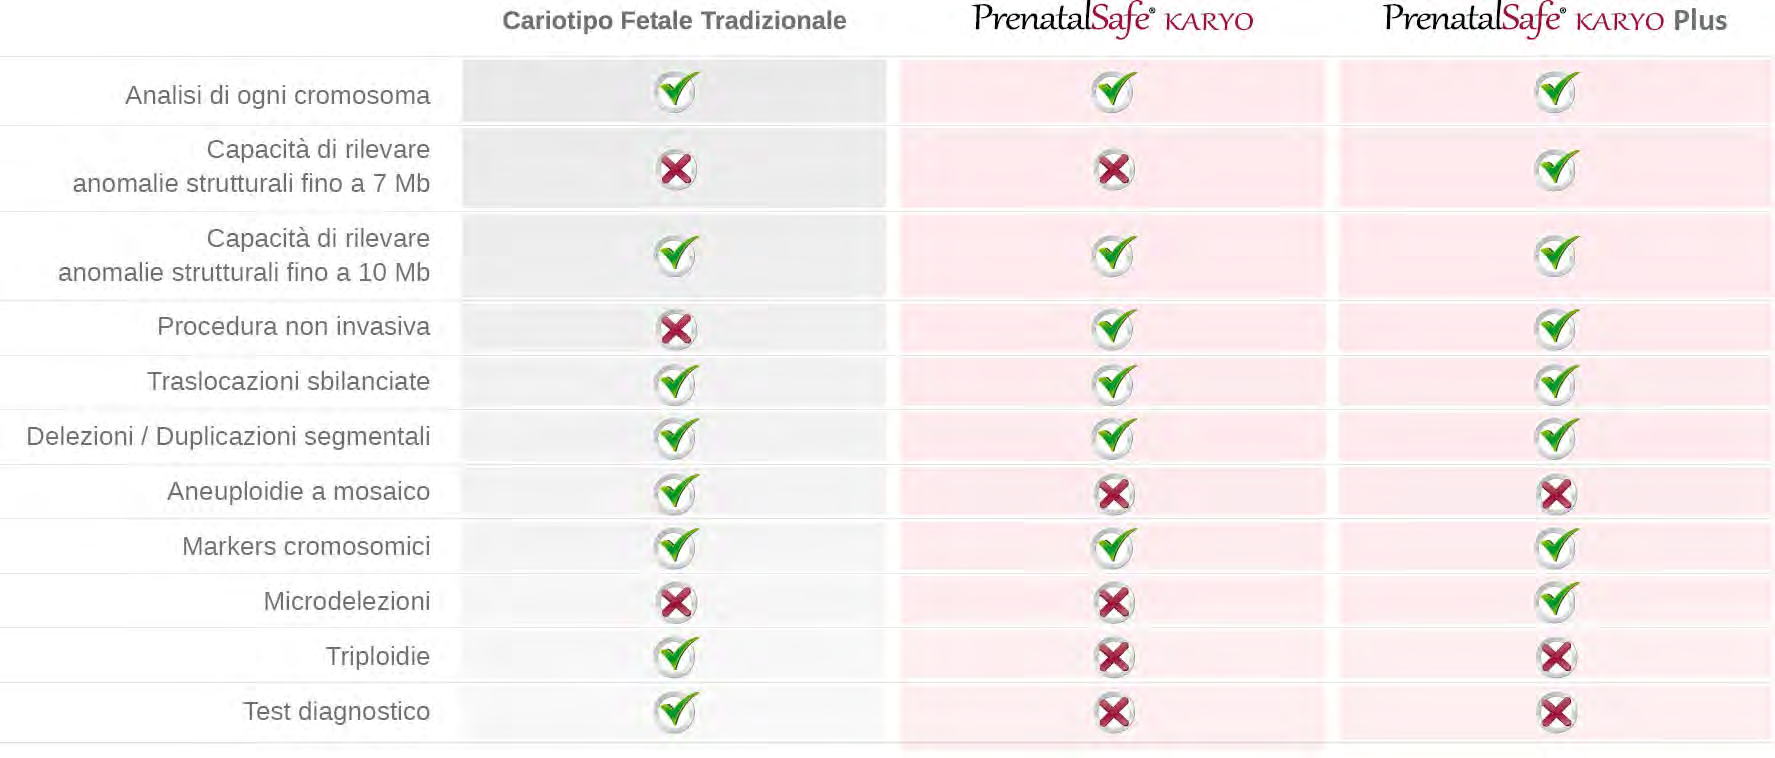 Cariotipo fetale tradizionale vs Plus E consigliabile ricorrere all utilizzo del PrenatalSafe Karyo Plus solo